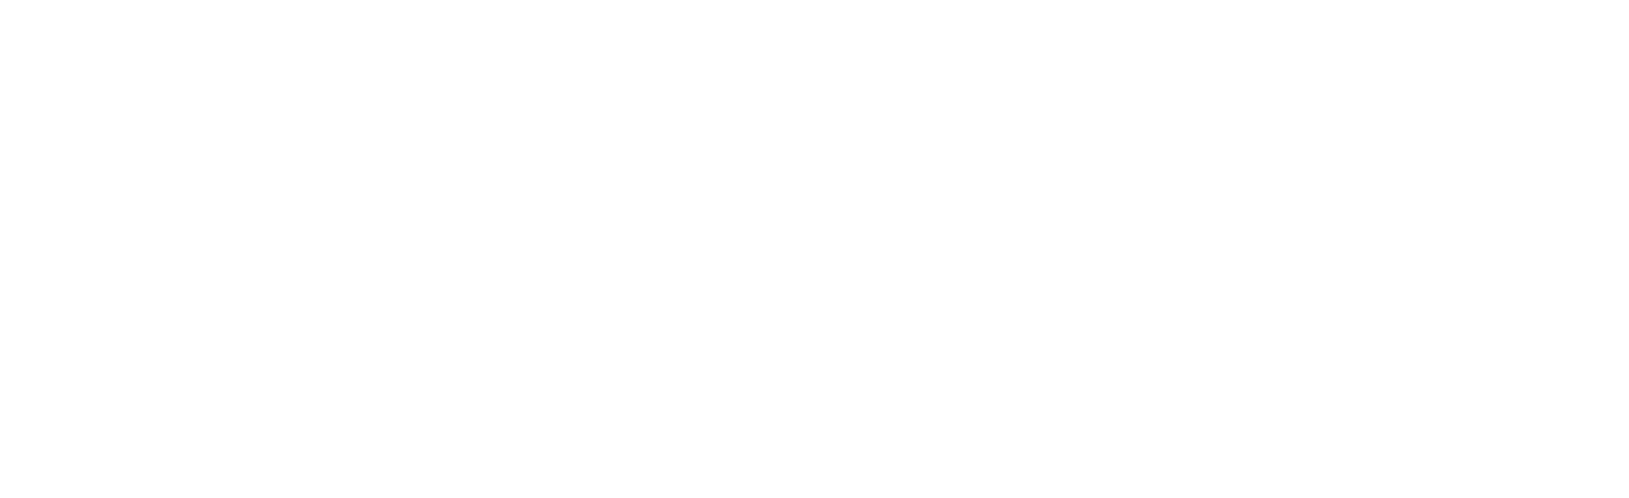 P&E Constructors Logo